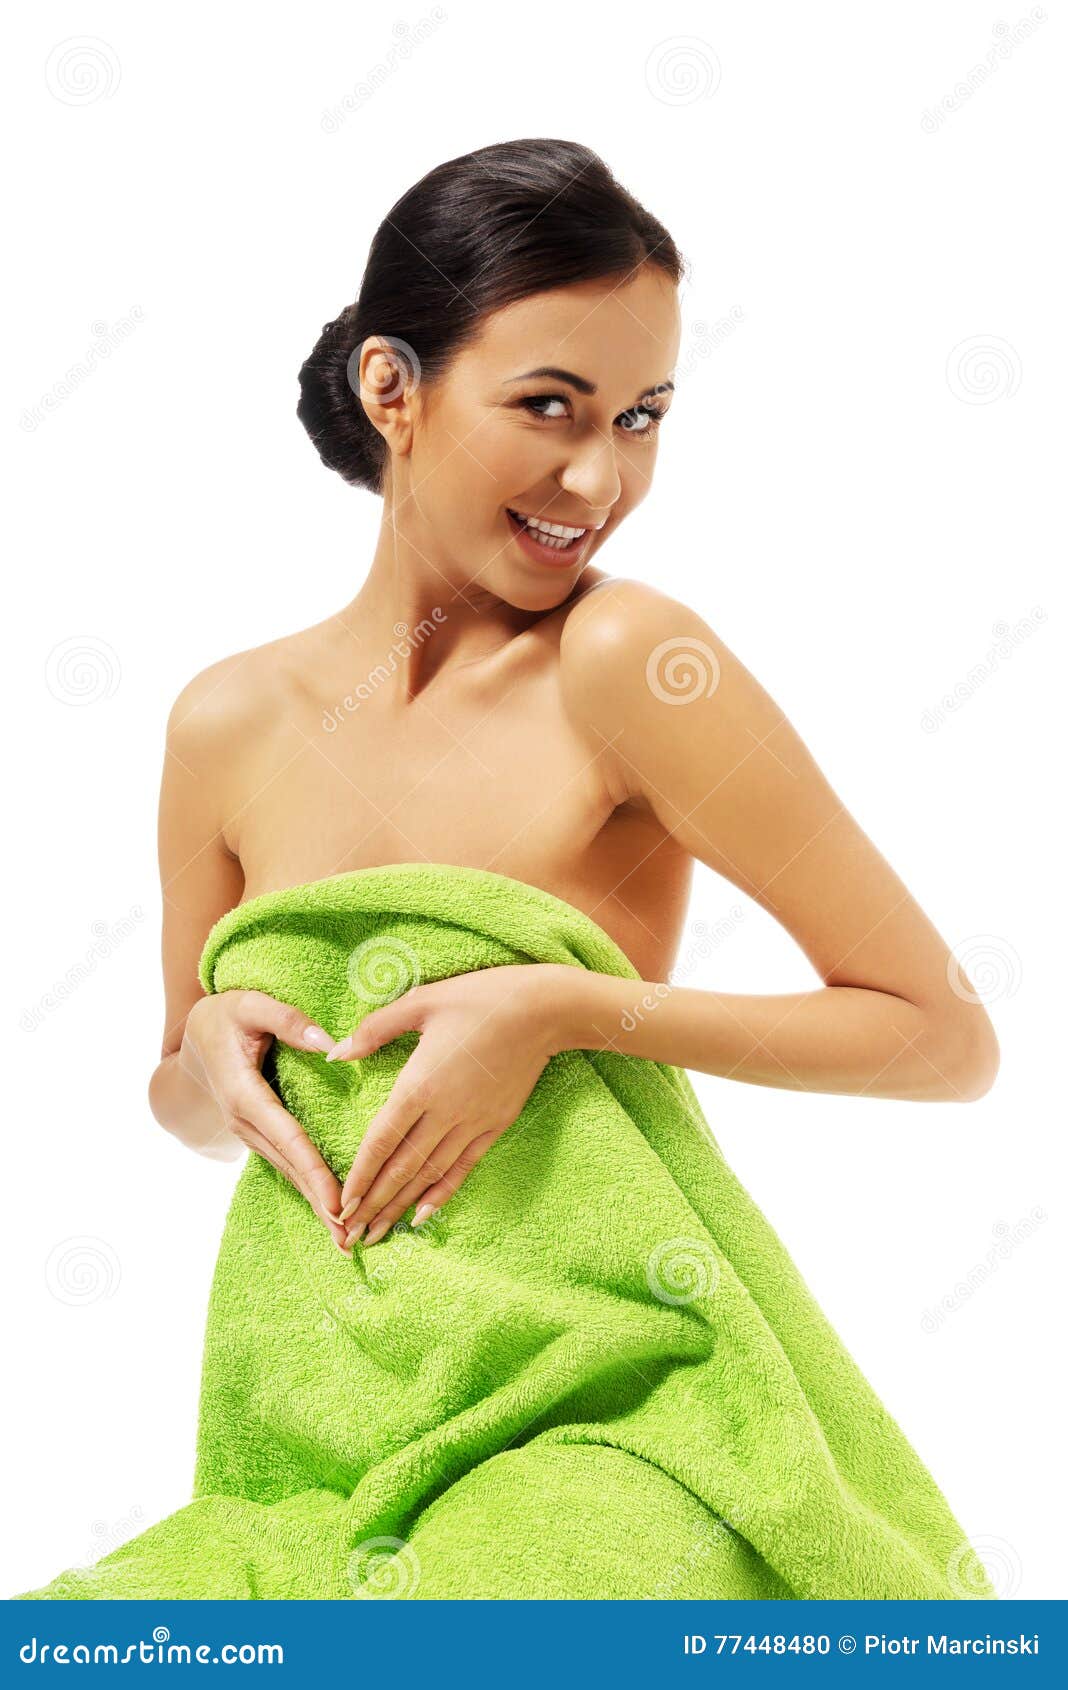 Ходит в полотенце. Девушка завернутая в полотенце. Девушка обёрнута в палатенце. Девушка замотанная в полотенце. Девушка обернутая в полотенце.